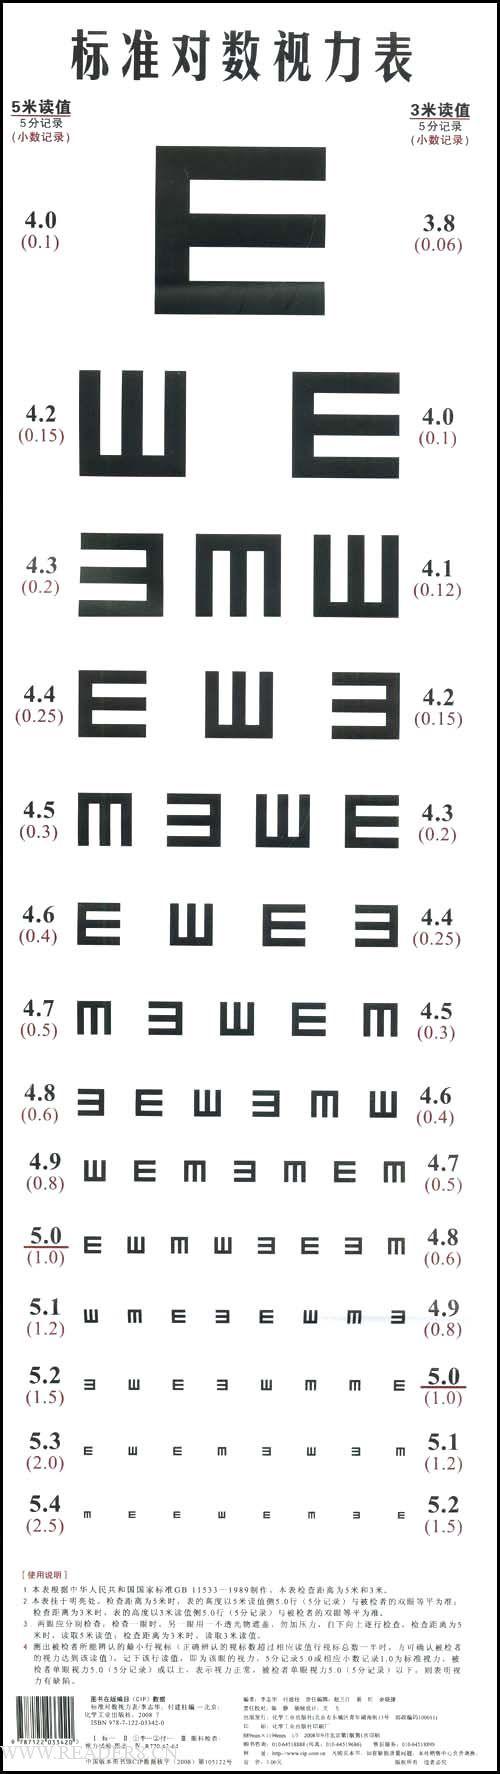 高三体检,在视力表前排队 自己右眼近视比较严重,左眼大约4.7.